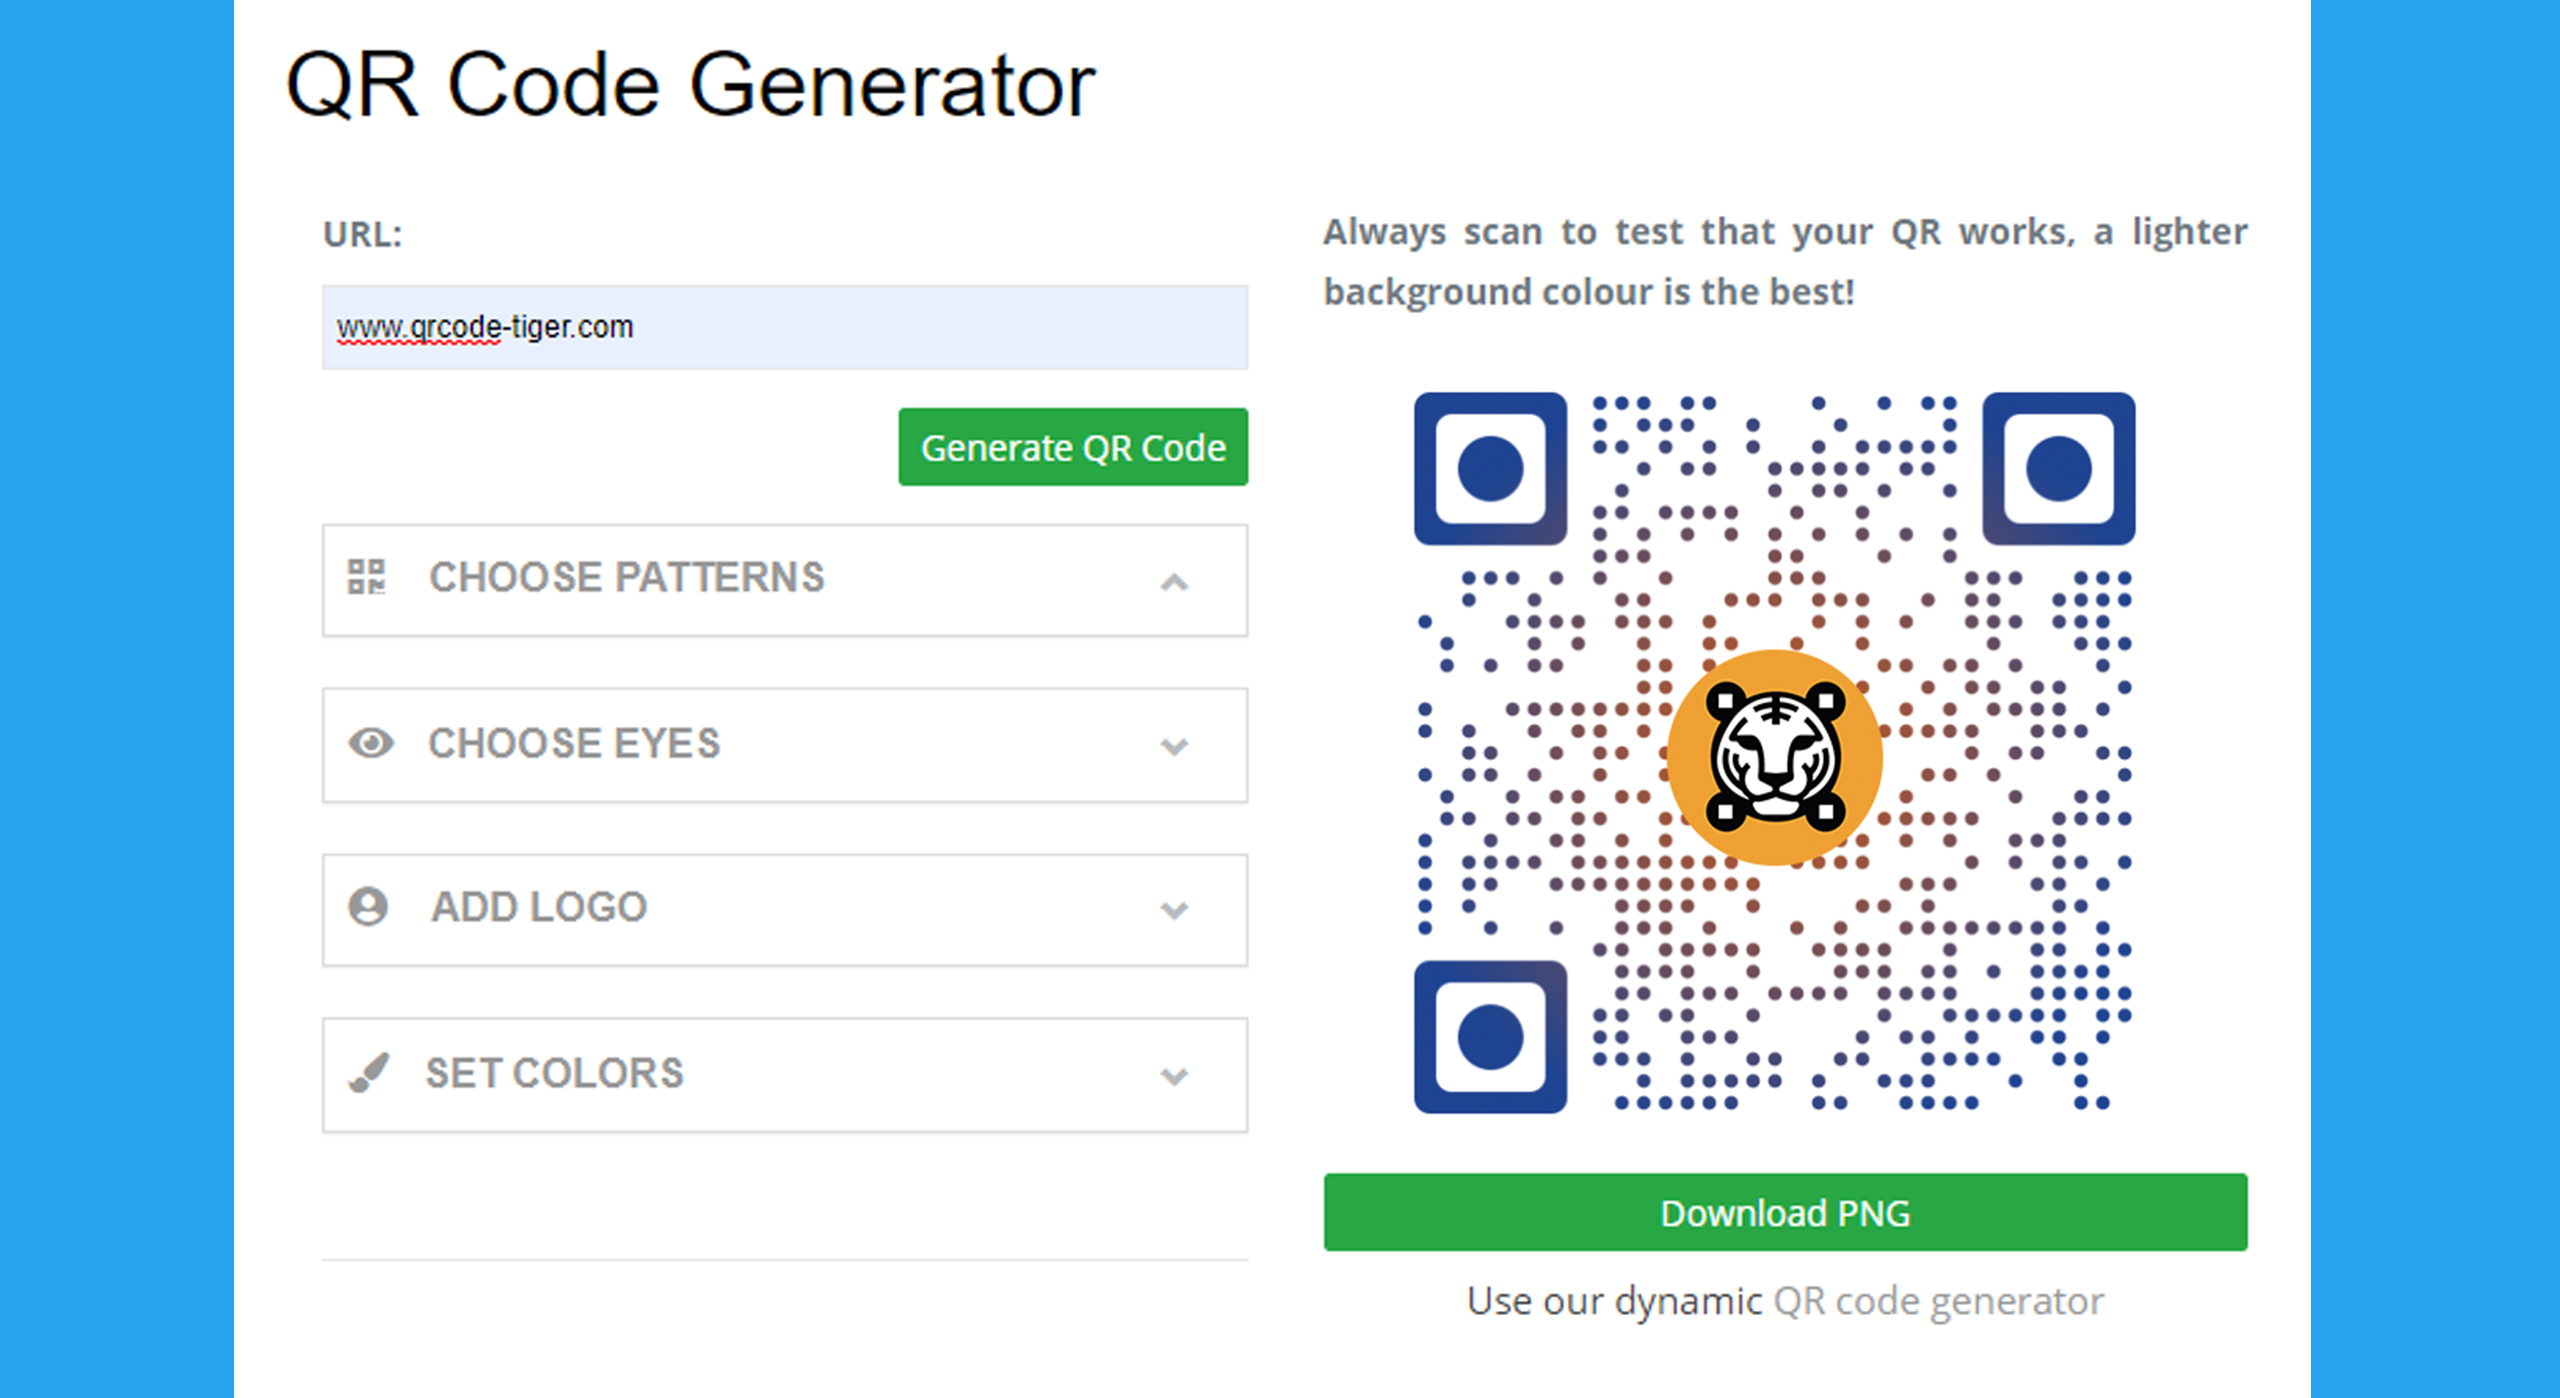 QRTiger - Make a static QR code with logo for Free!